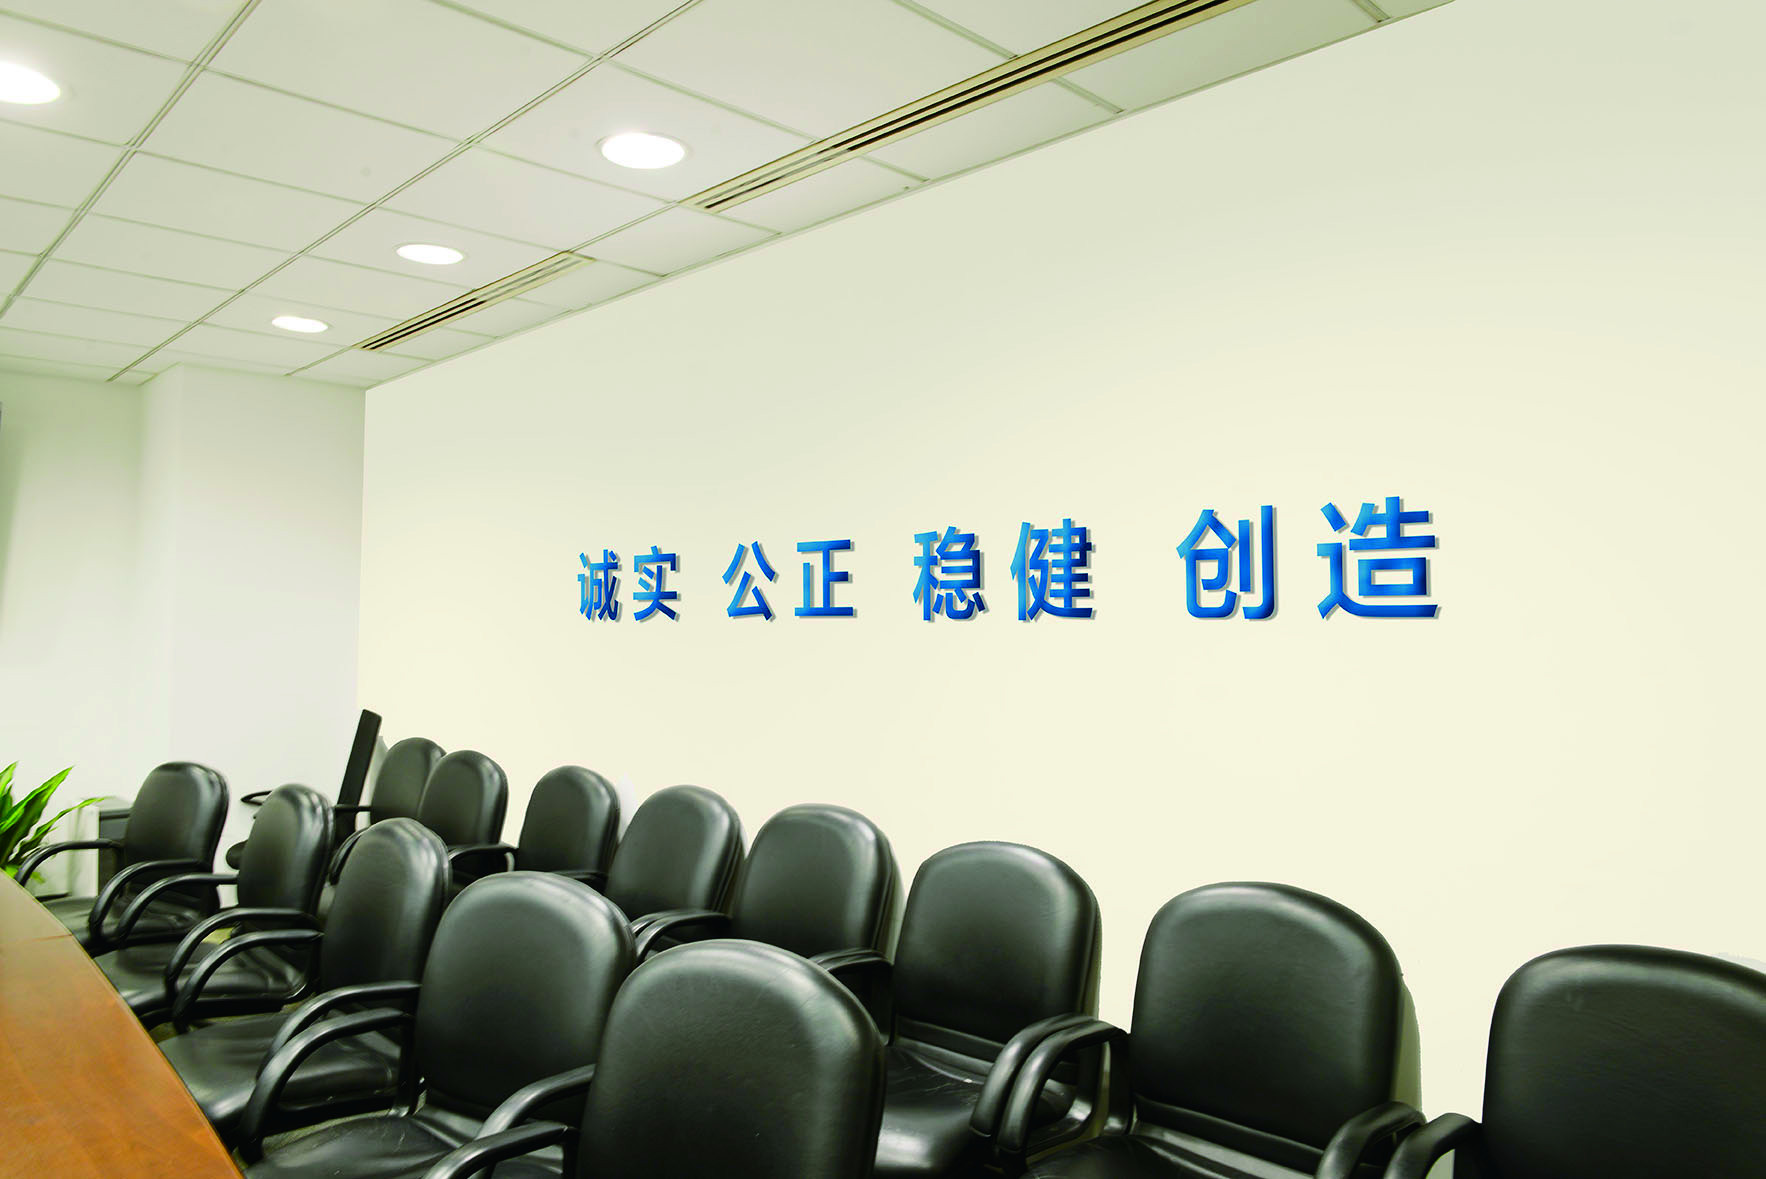 中国建设银行企业文化展示标准